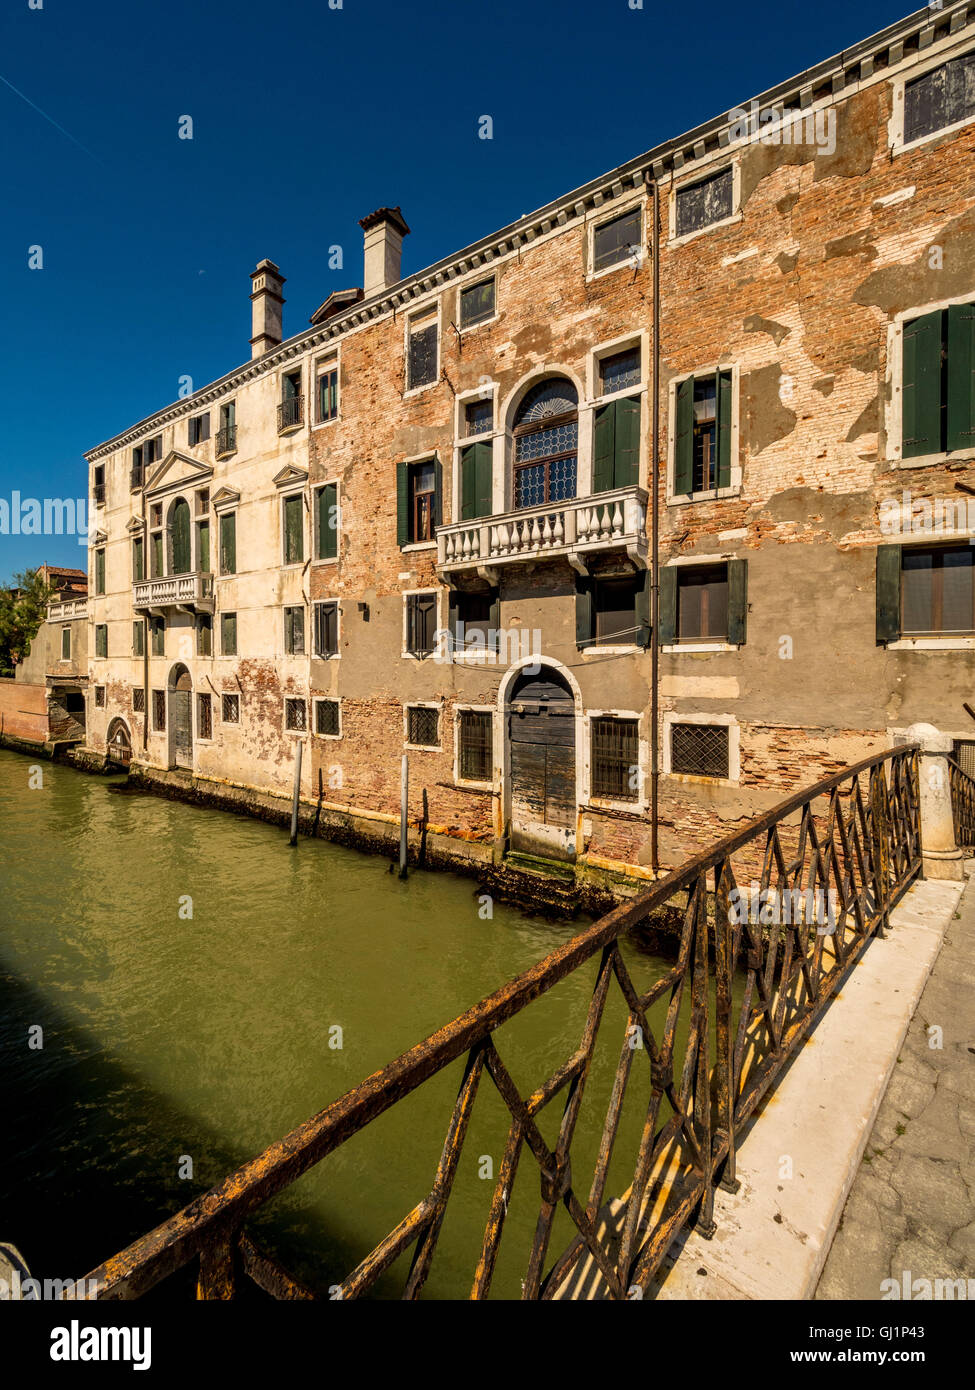 Traditionelle Kanalseite Gebäude mit flockig Rendering und freiliegende Ziegelsteine. Venedig, Italien. Stockfoto